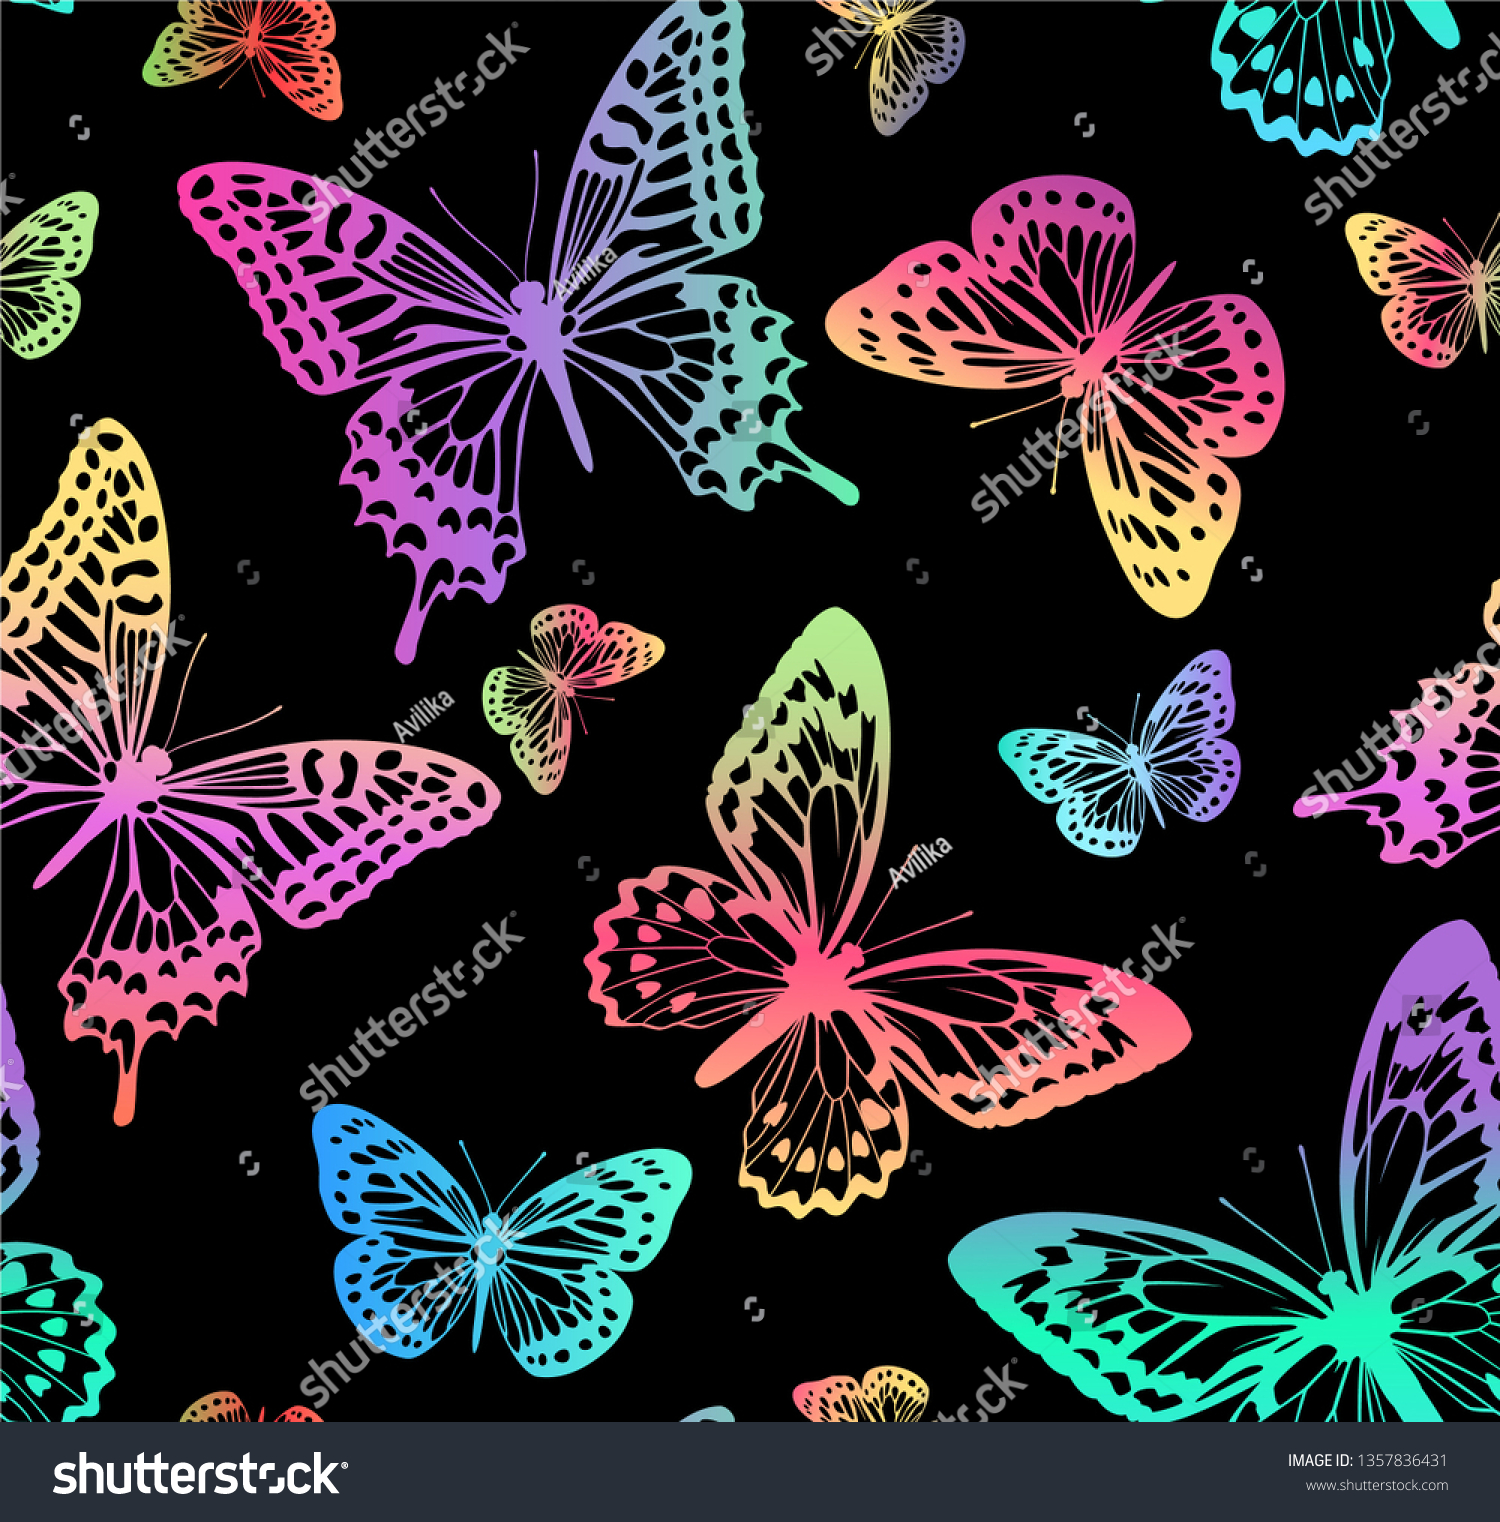 黒い背景に虹の蝶のパターン カーテン 壁紙 布 包装紙に適している のベクター画像素材 ロイヤリティフリー